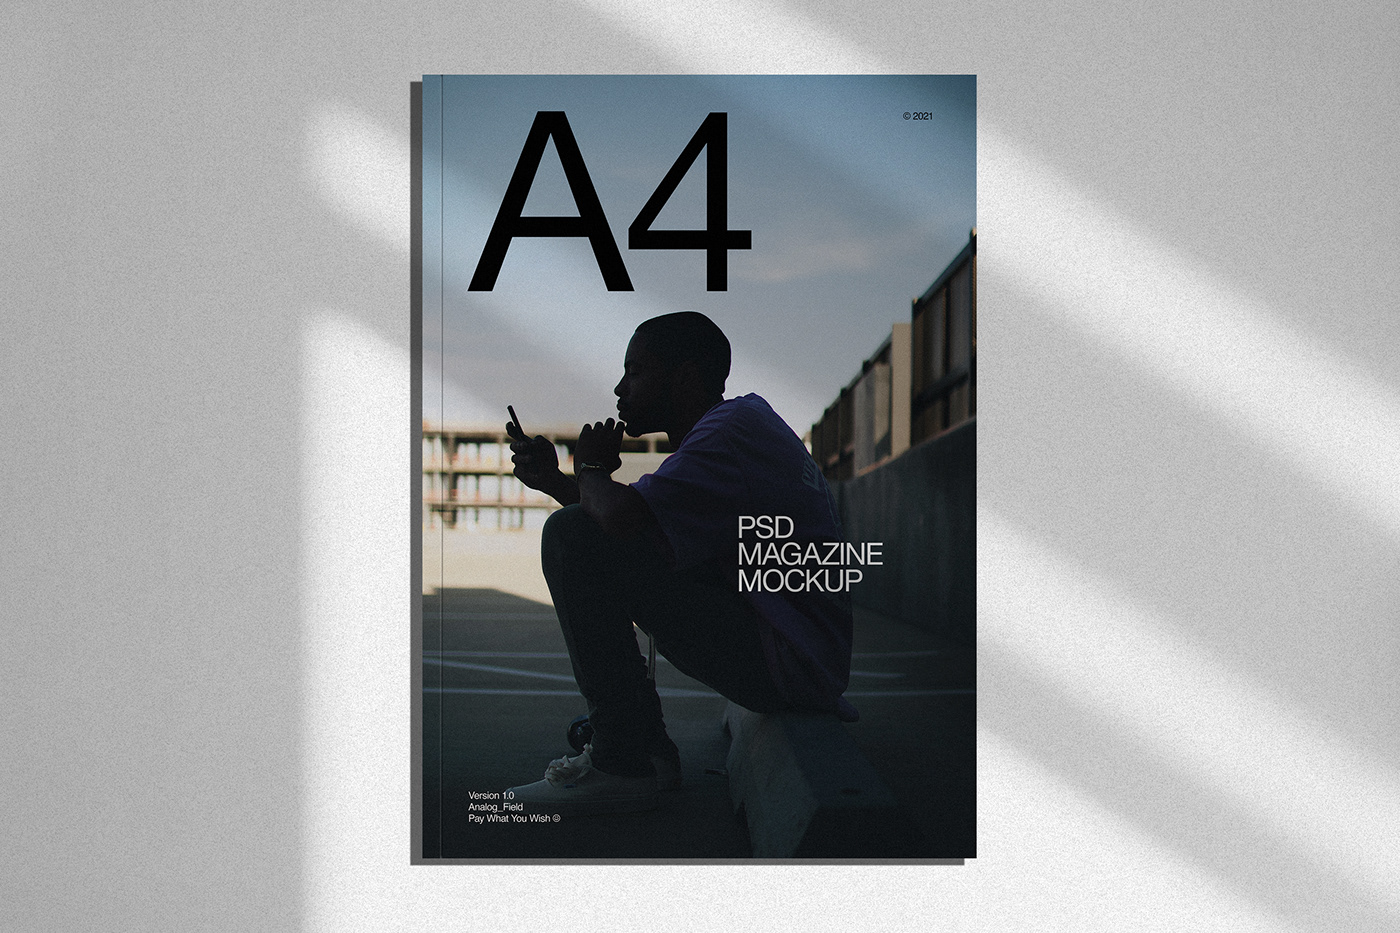 a4 free freebie magazine Mockup psd shadow A4 magazine A4 Magazine MockUp Magazine mockup